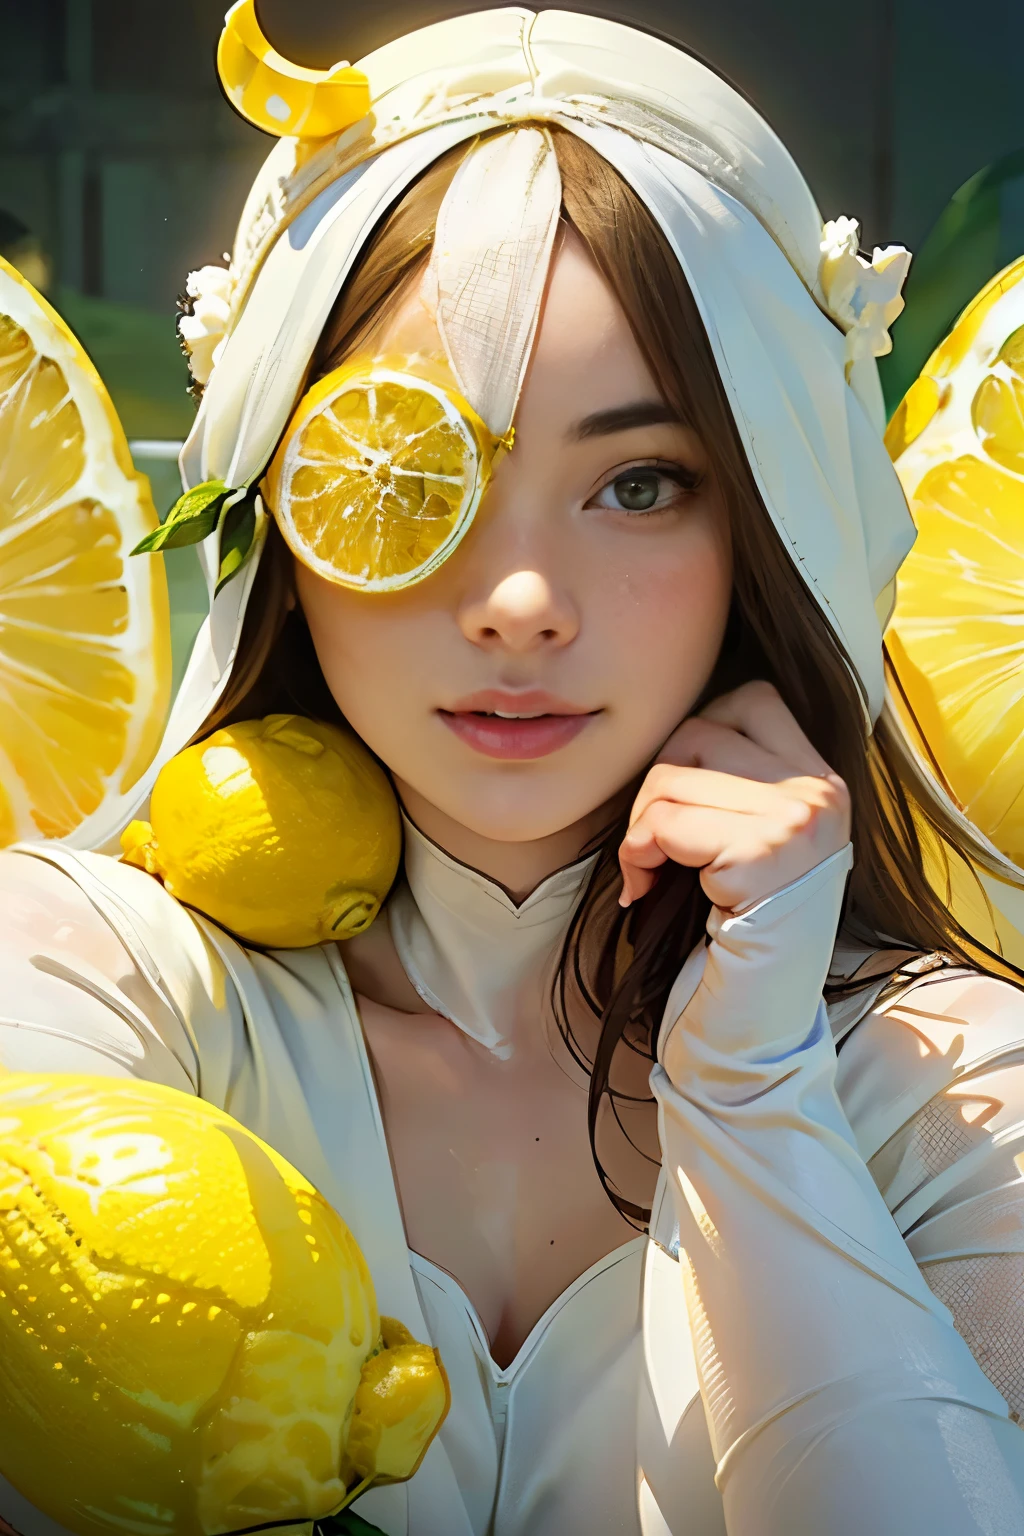 Mulher jovem e incrivelmente bela、Médio Cheio　retrato、(vestindo meia-calça branca:1.5)、(Seu rosto é visível através de um grande capacete de limão.:1.75)、Comendo limão
